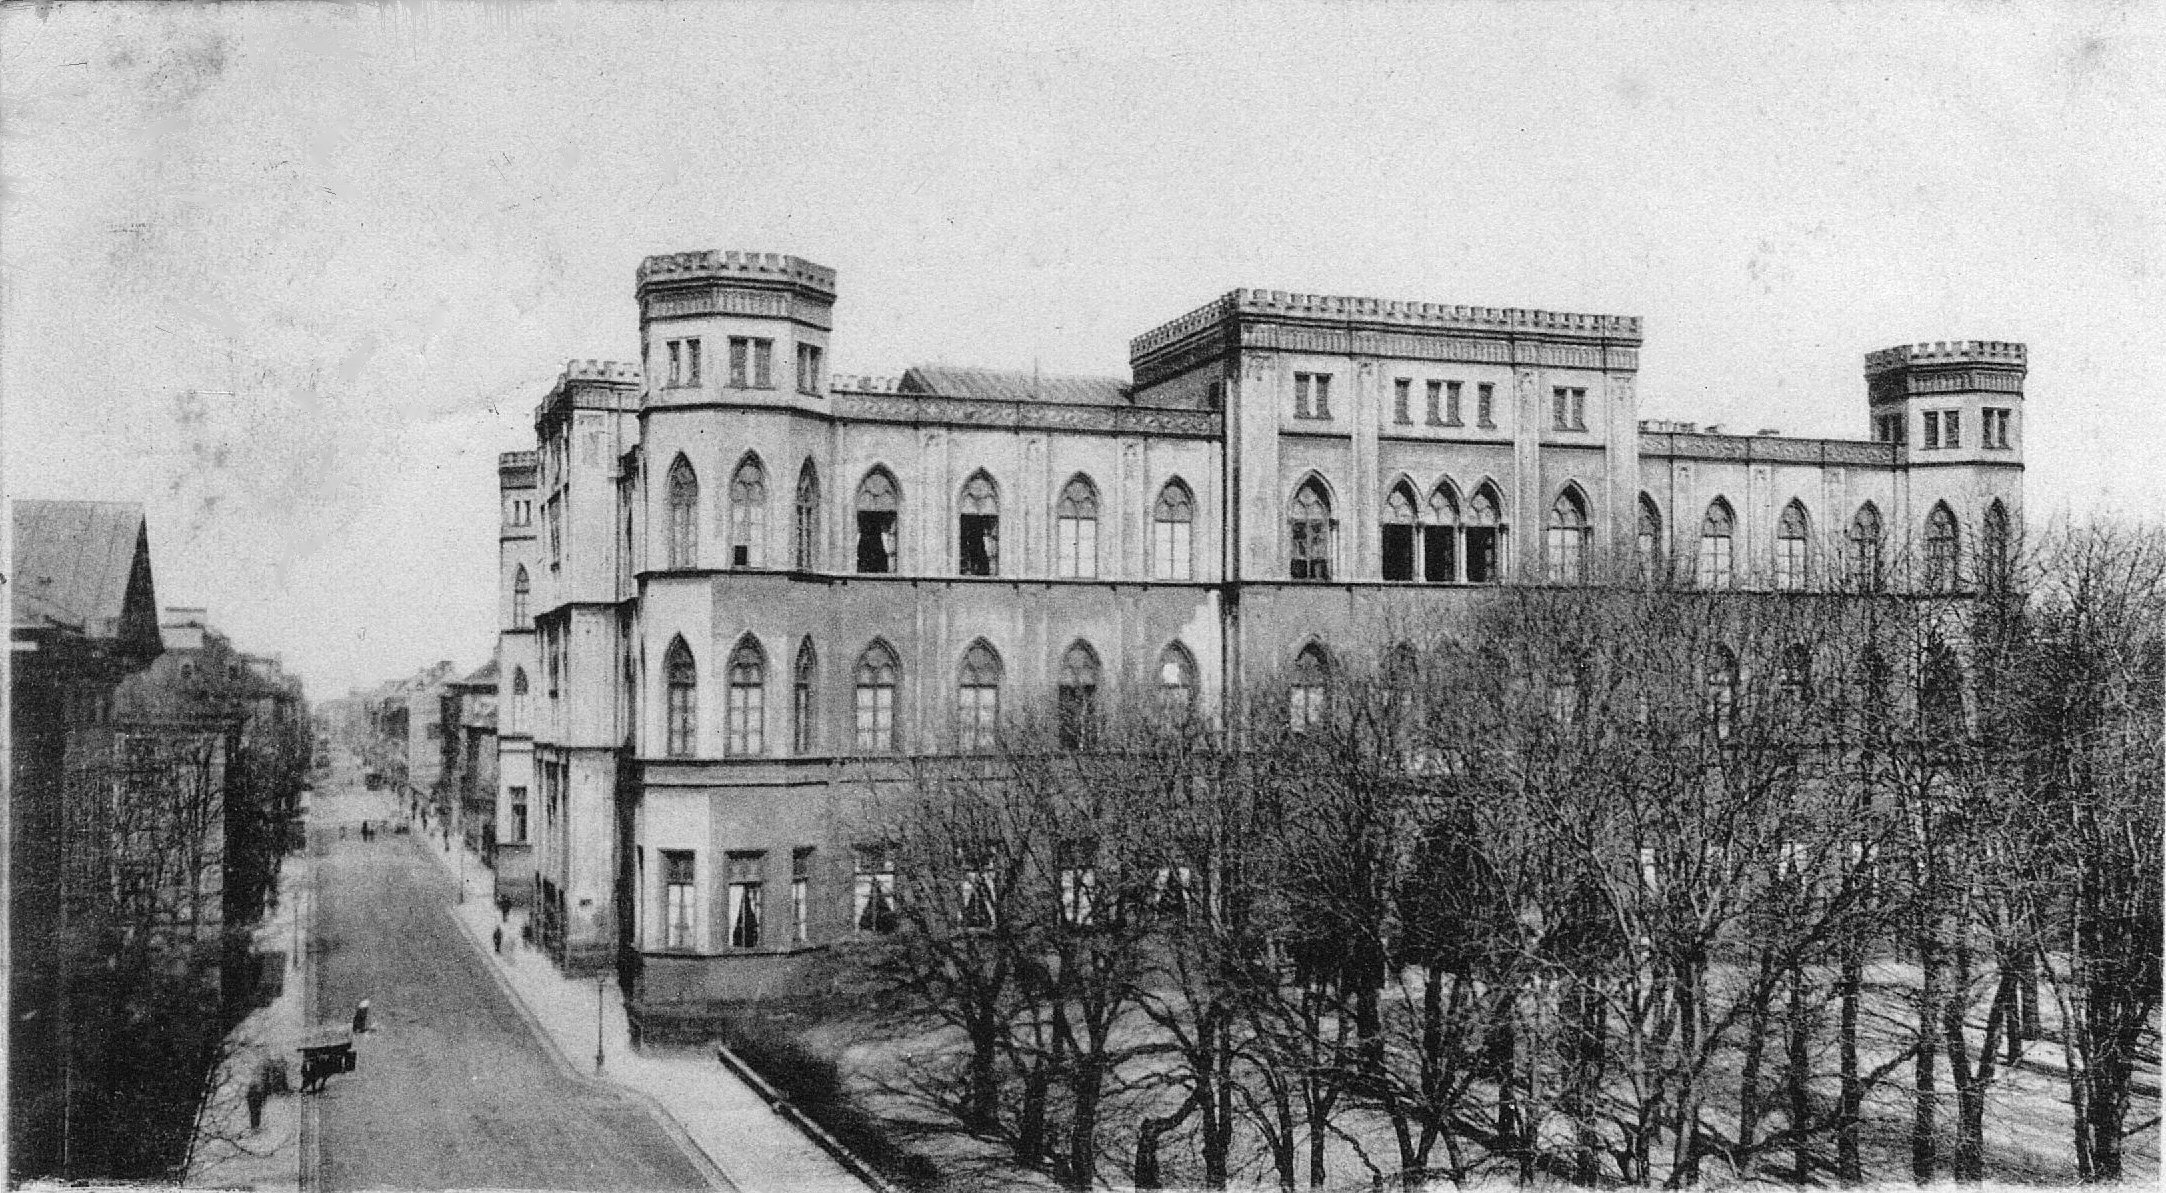 München Wittelsbacher-Palais, Schaltzentrale der Geheimen Staatspolizei München 1943, Postkarte gelaufen 29.3.1900, Privatbesitz